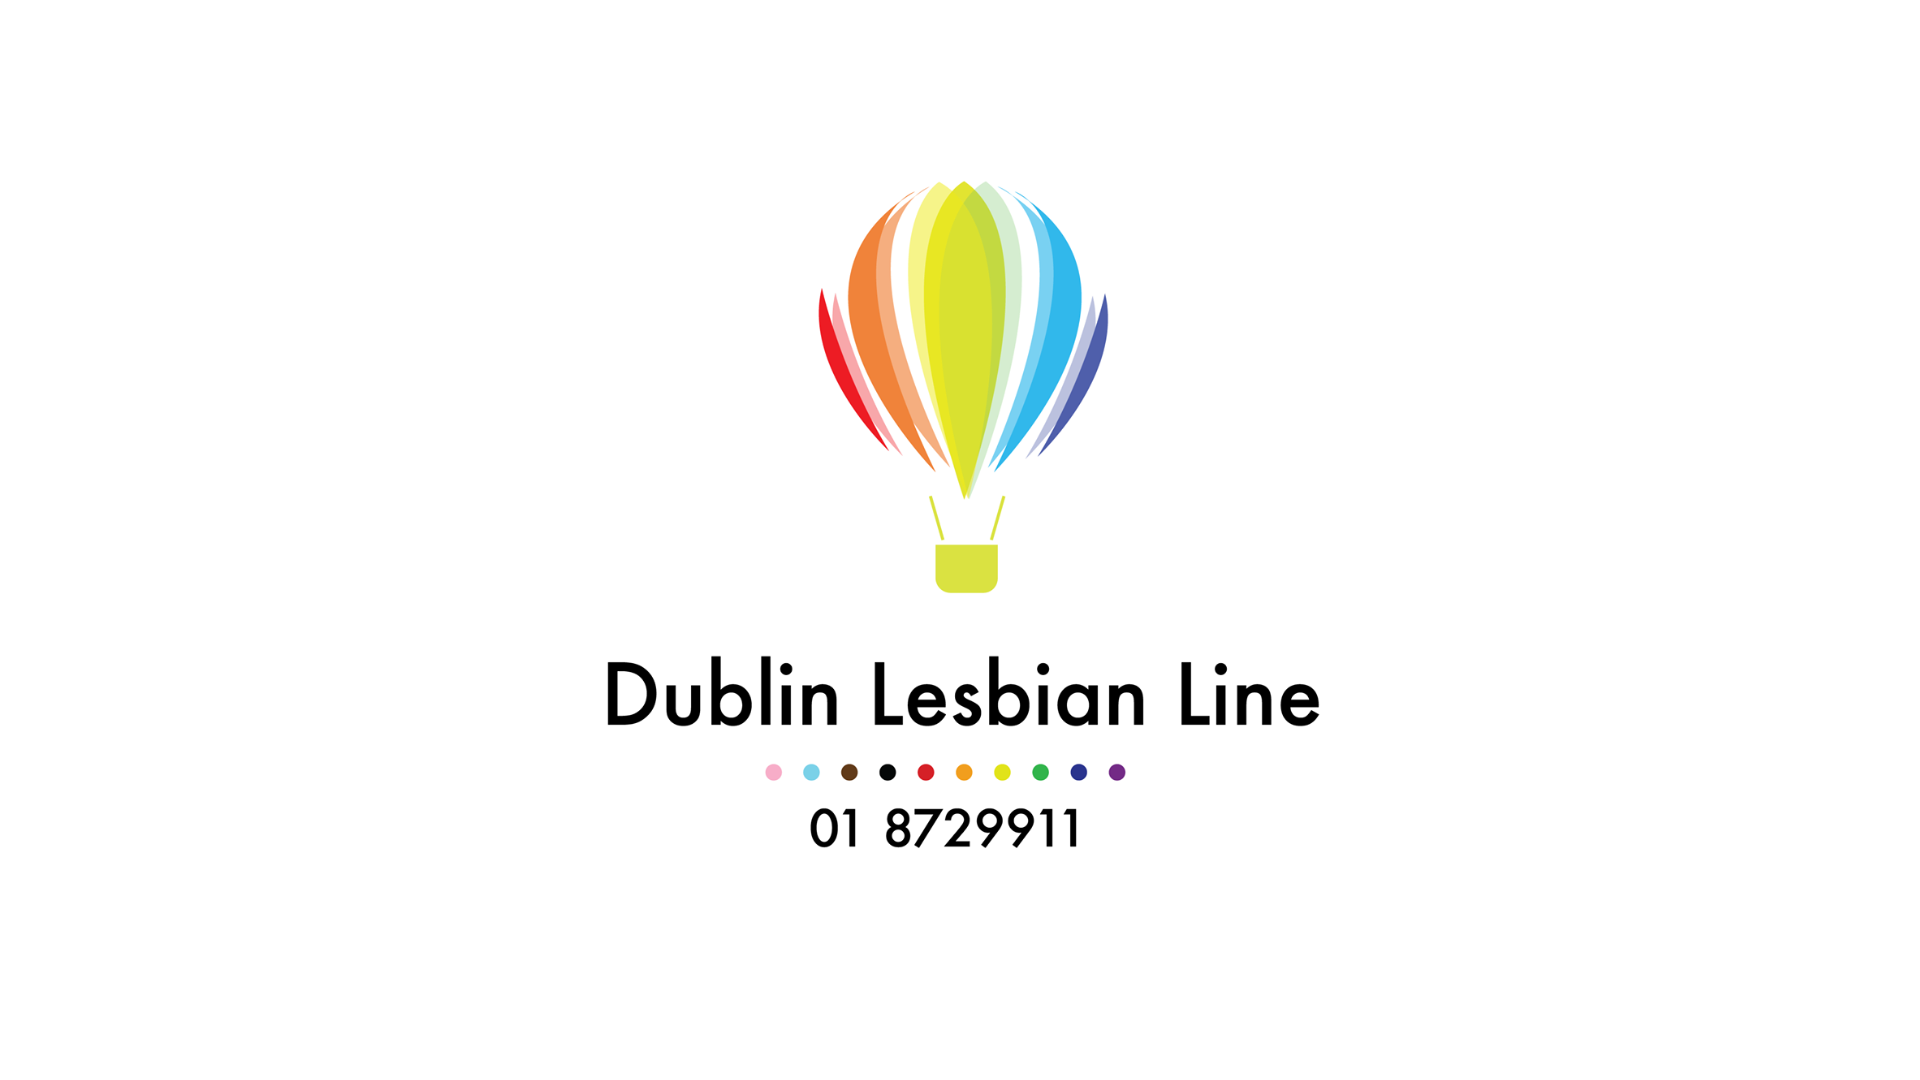 Dublin Lesbian Line